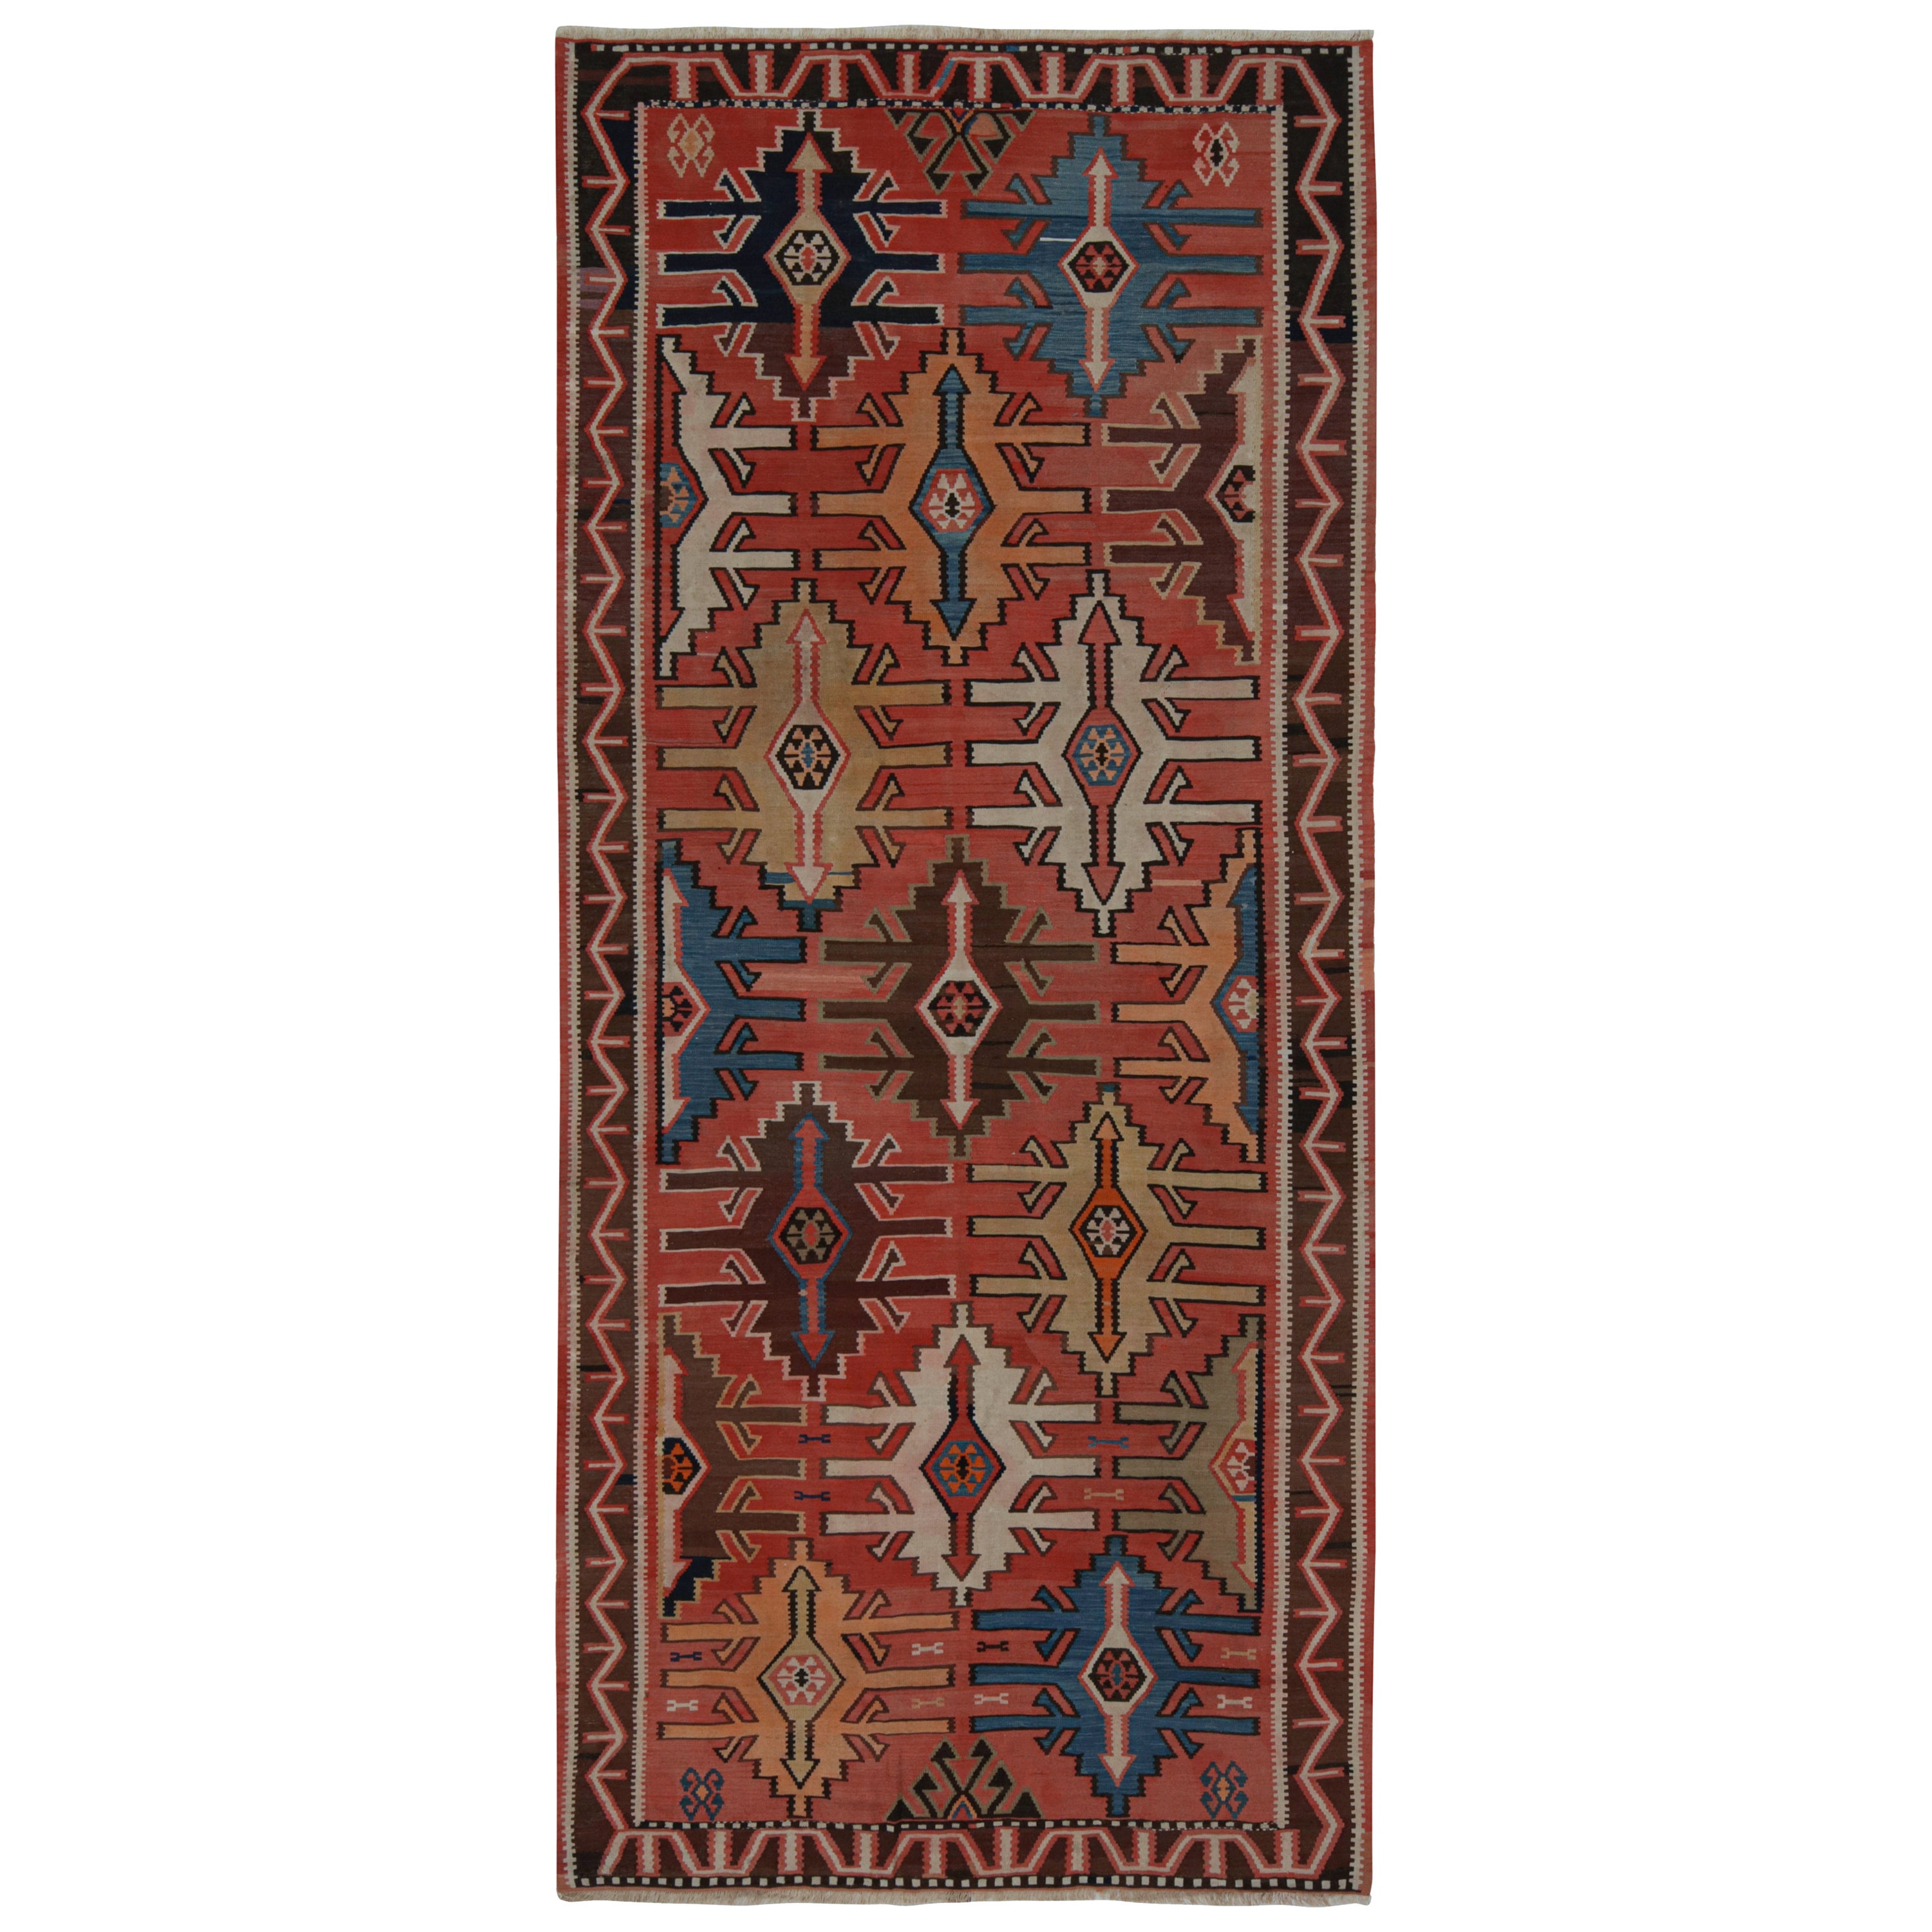 Persischer Vintage-Kelim in Rot mit polychromen Mustern, von Rug & Kilim